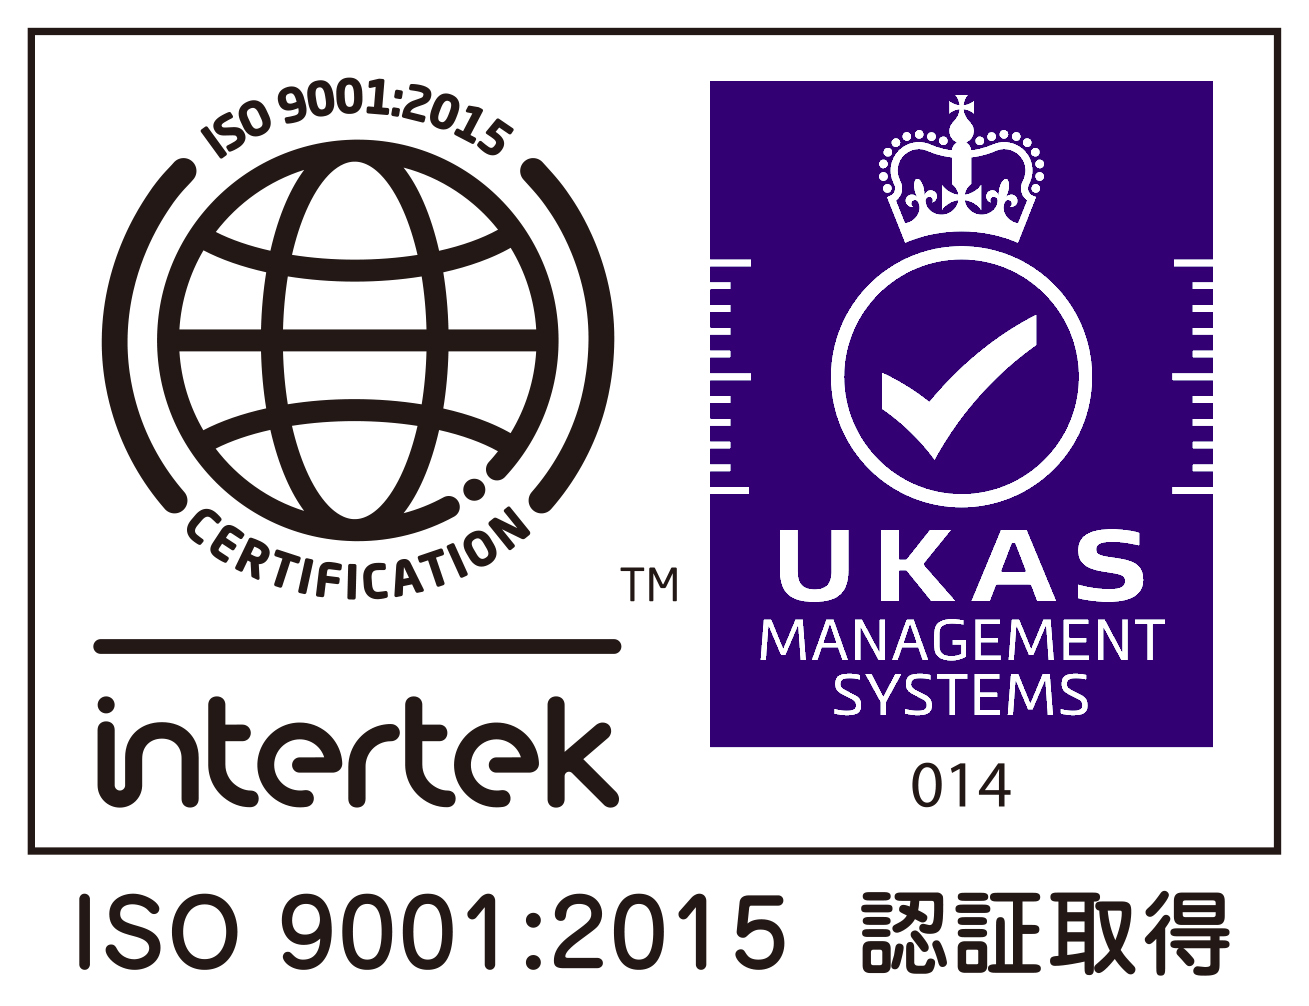 ISO9001:2015について